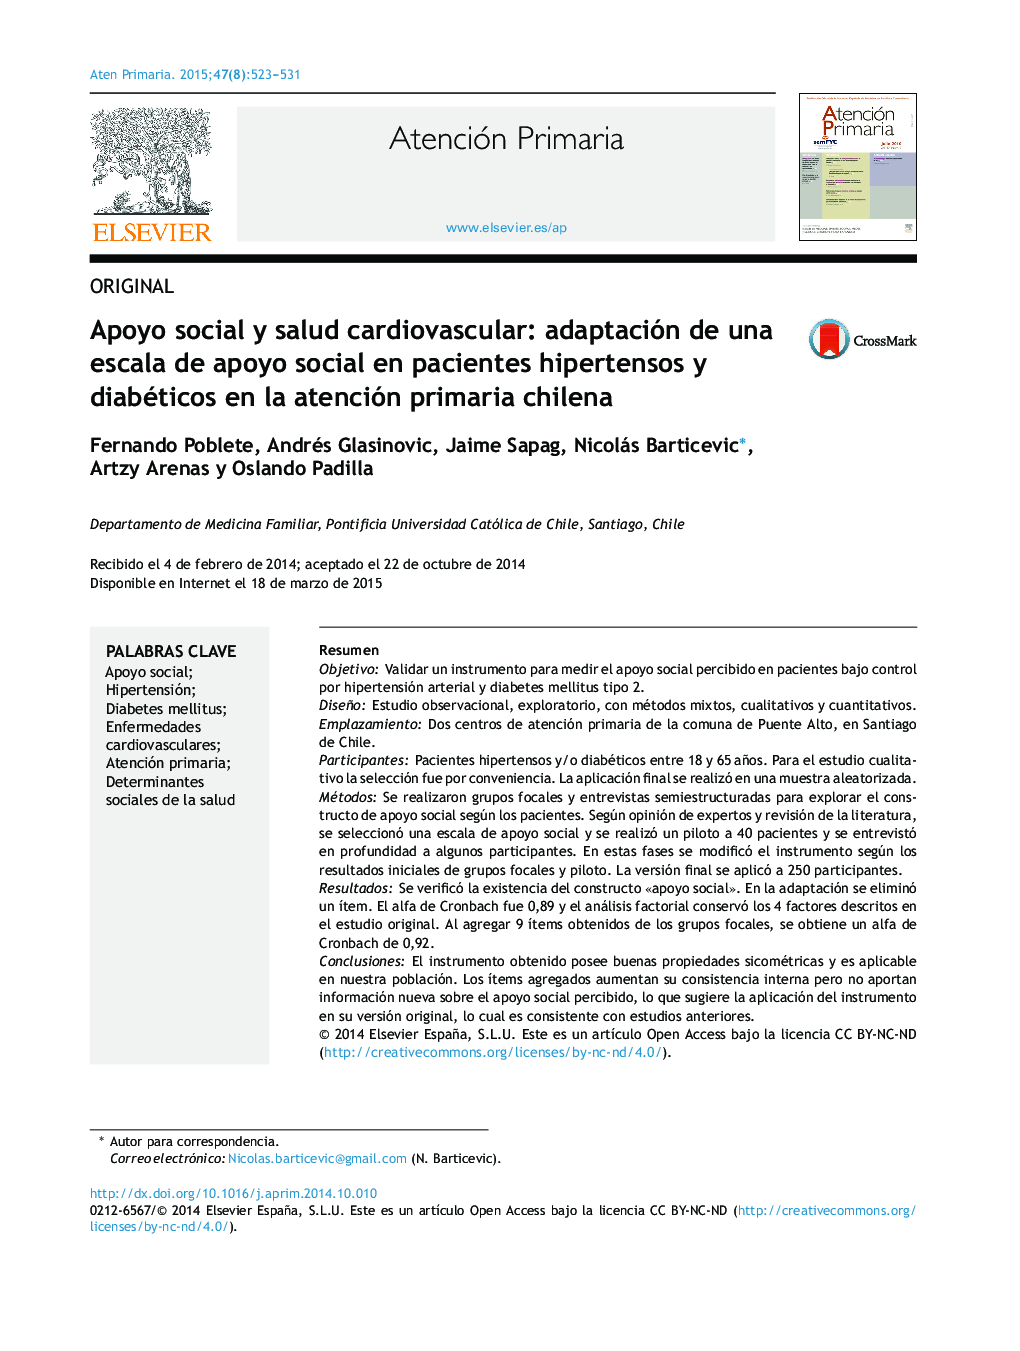 Apoyo social y salud cardiovascular: adaptación de una escala de apoyo social en pacientes hipertensos y diabéticos en la atención primaria chilena